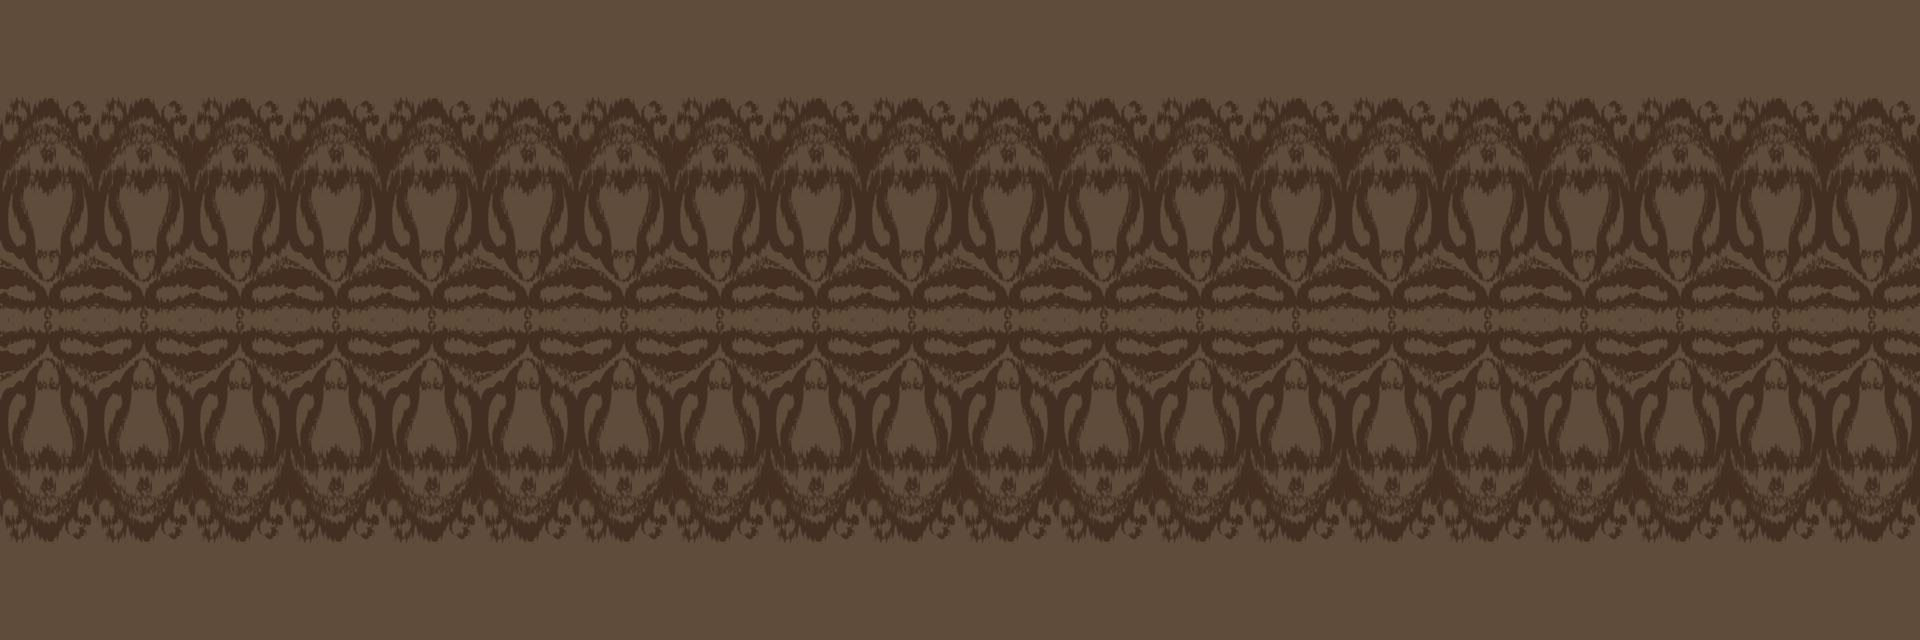 batik têxtil ikkat ou ikat diamante padrão sem costura design de vetor digital para impressão saree kurti borneo tecido borda escova símbolos amostras algodão